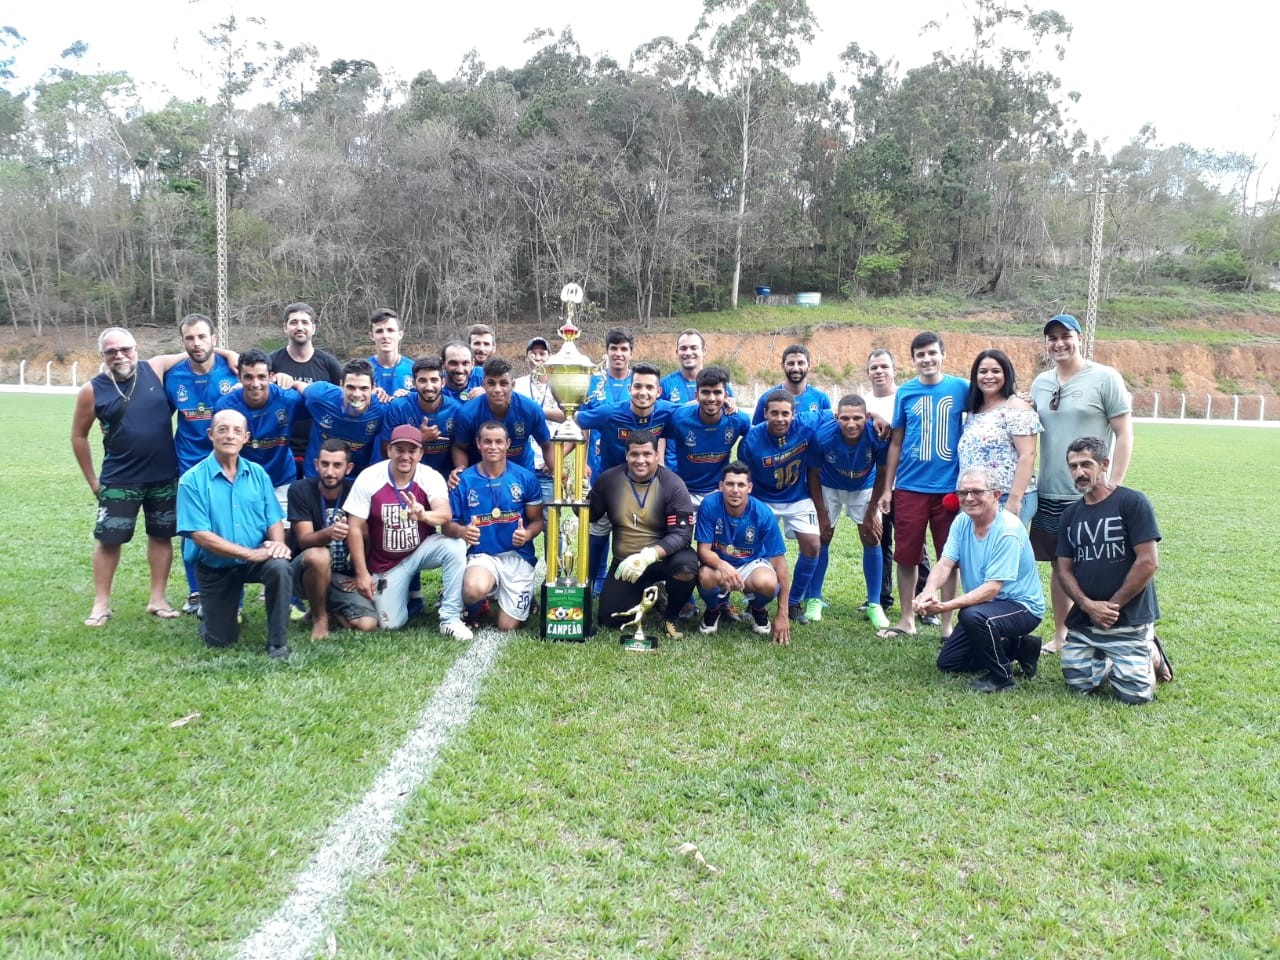 São Cristóvão leva o título do Campeonato de Futebol Amador de 2018